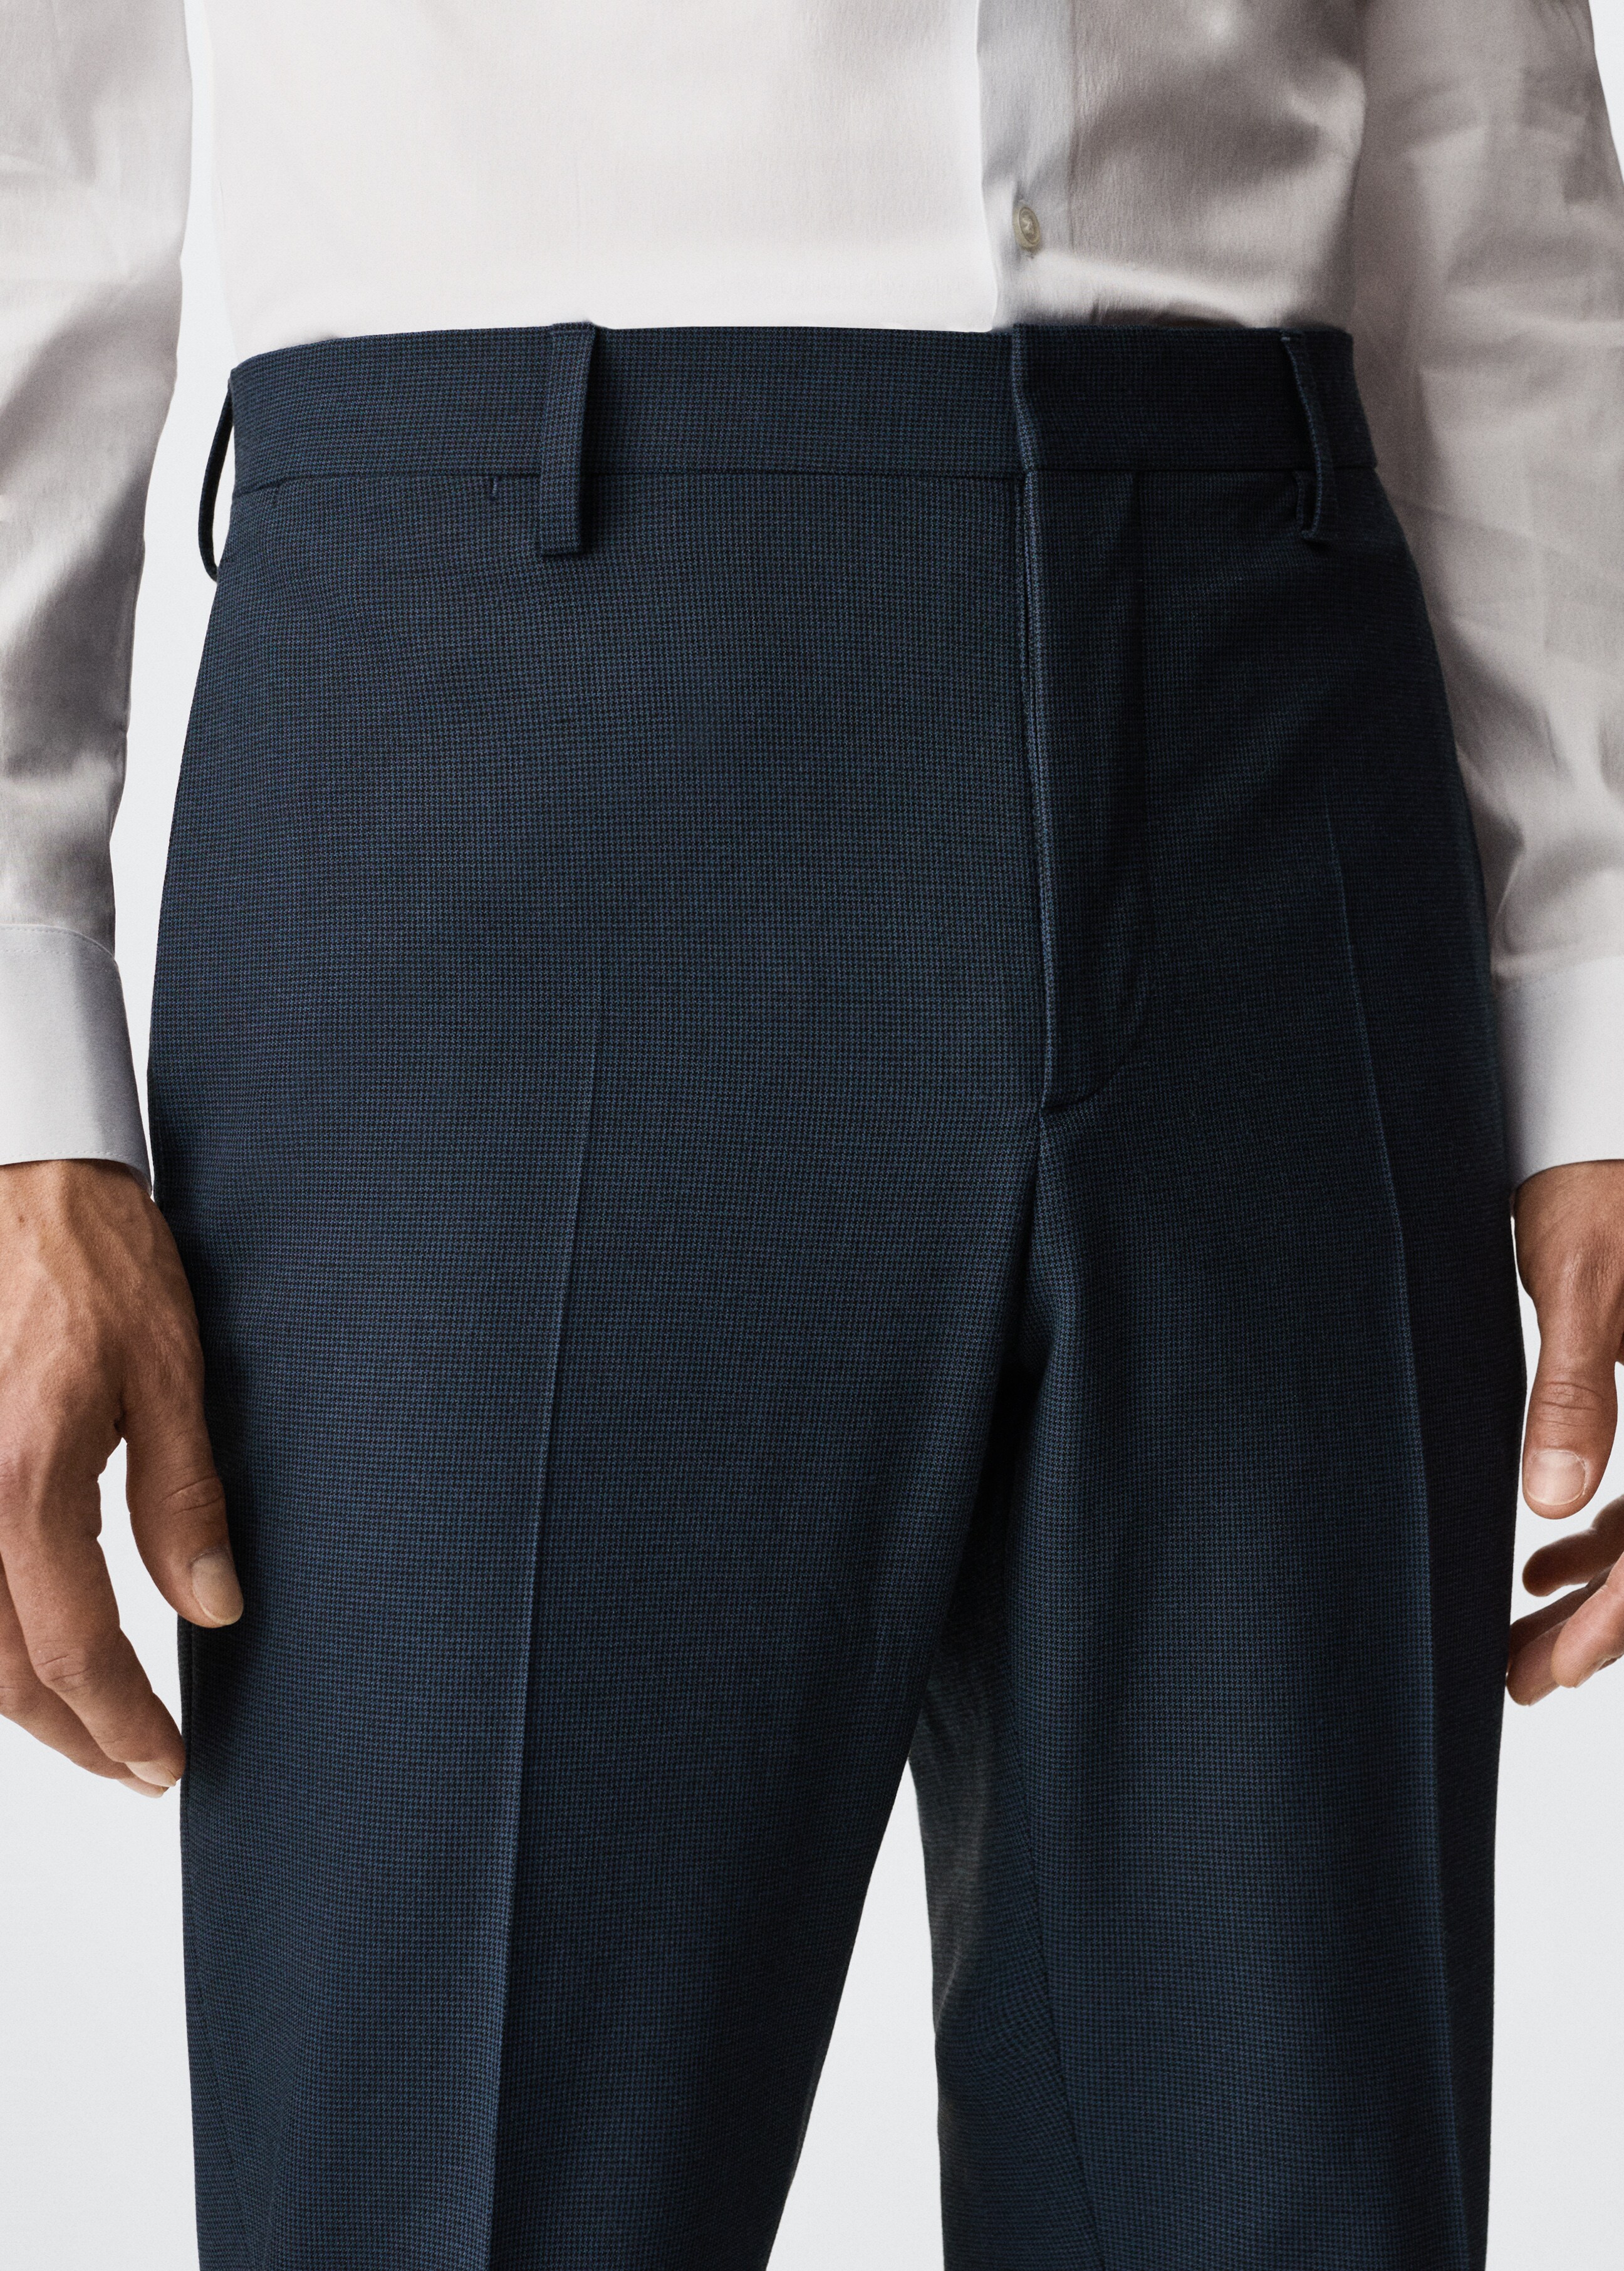 Pantalón traje super slim fit microestructura - Detalle del artículo 1